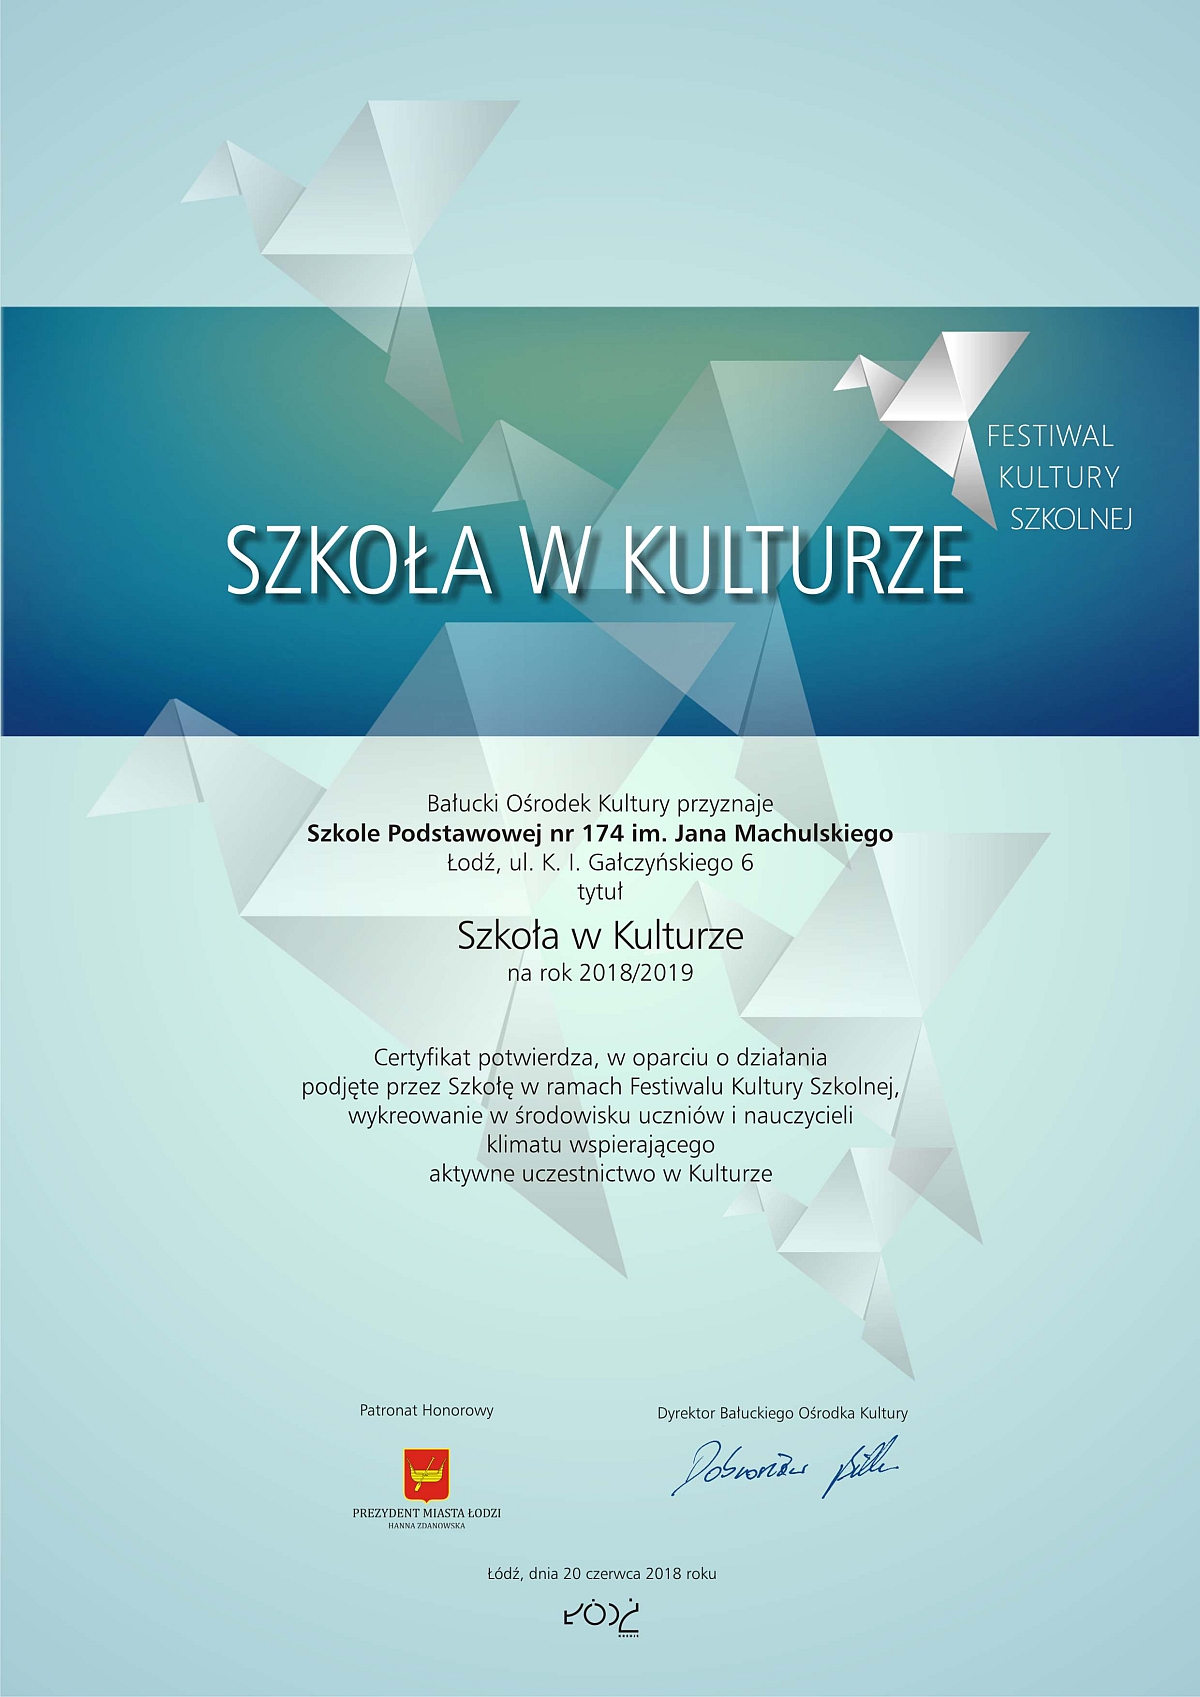 Certyfikat Szkoła w Kulturze przyznany Szkole Podstawowej numer 174 w Łodzi w oparciu o działania podjęte w ramach Festiwalu Kultury Szkolnej.